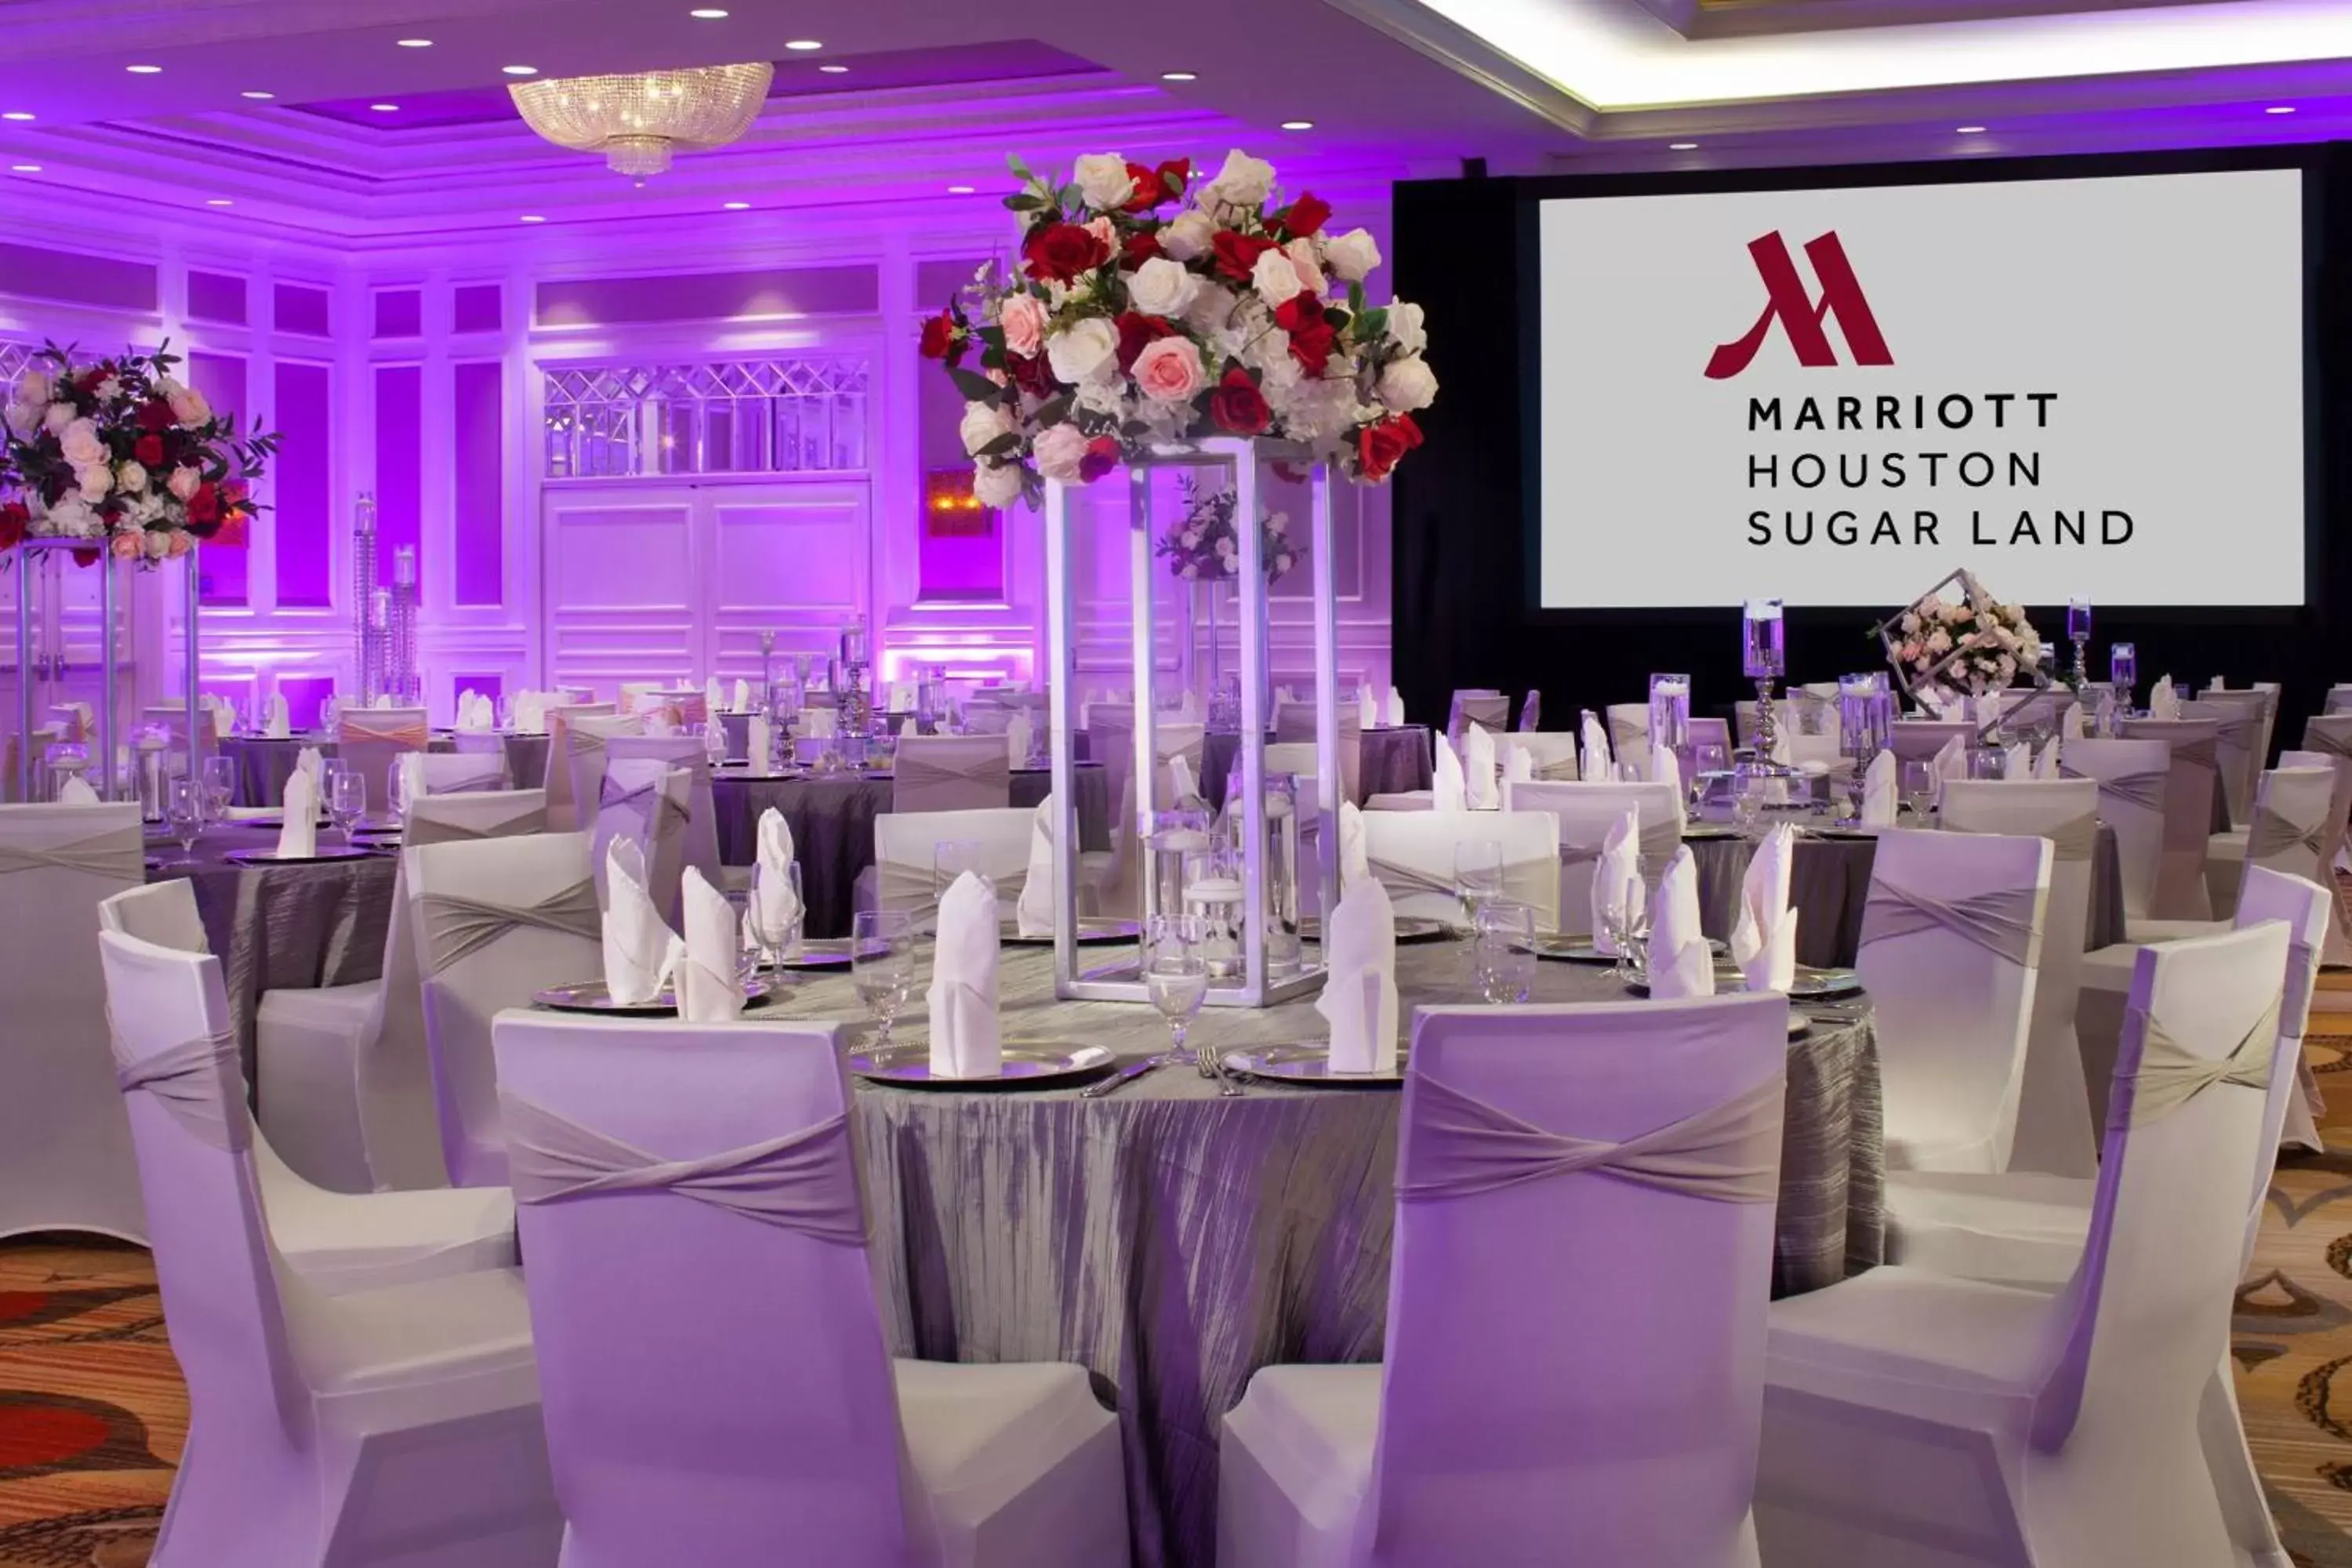 Banquet/Function facilities, Banquet Facilities in Houston Marriott Sugar Land